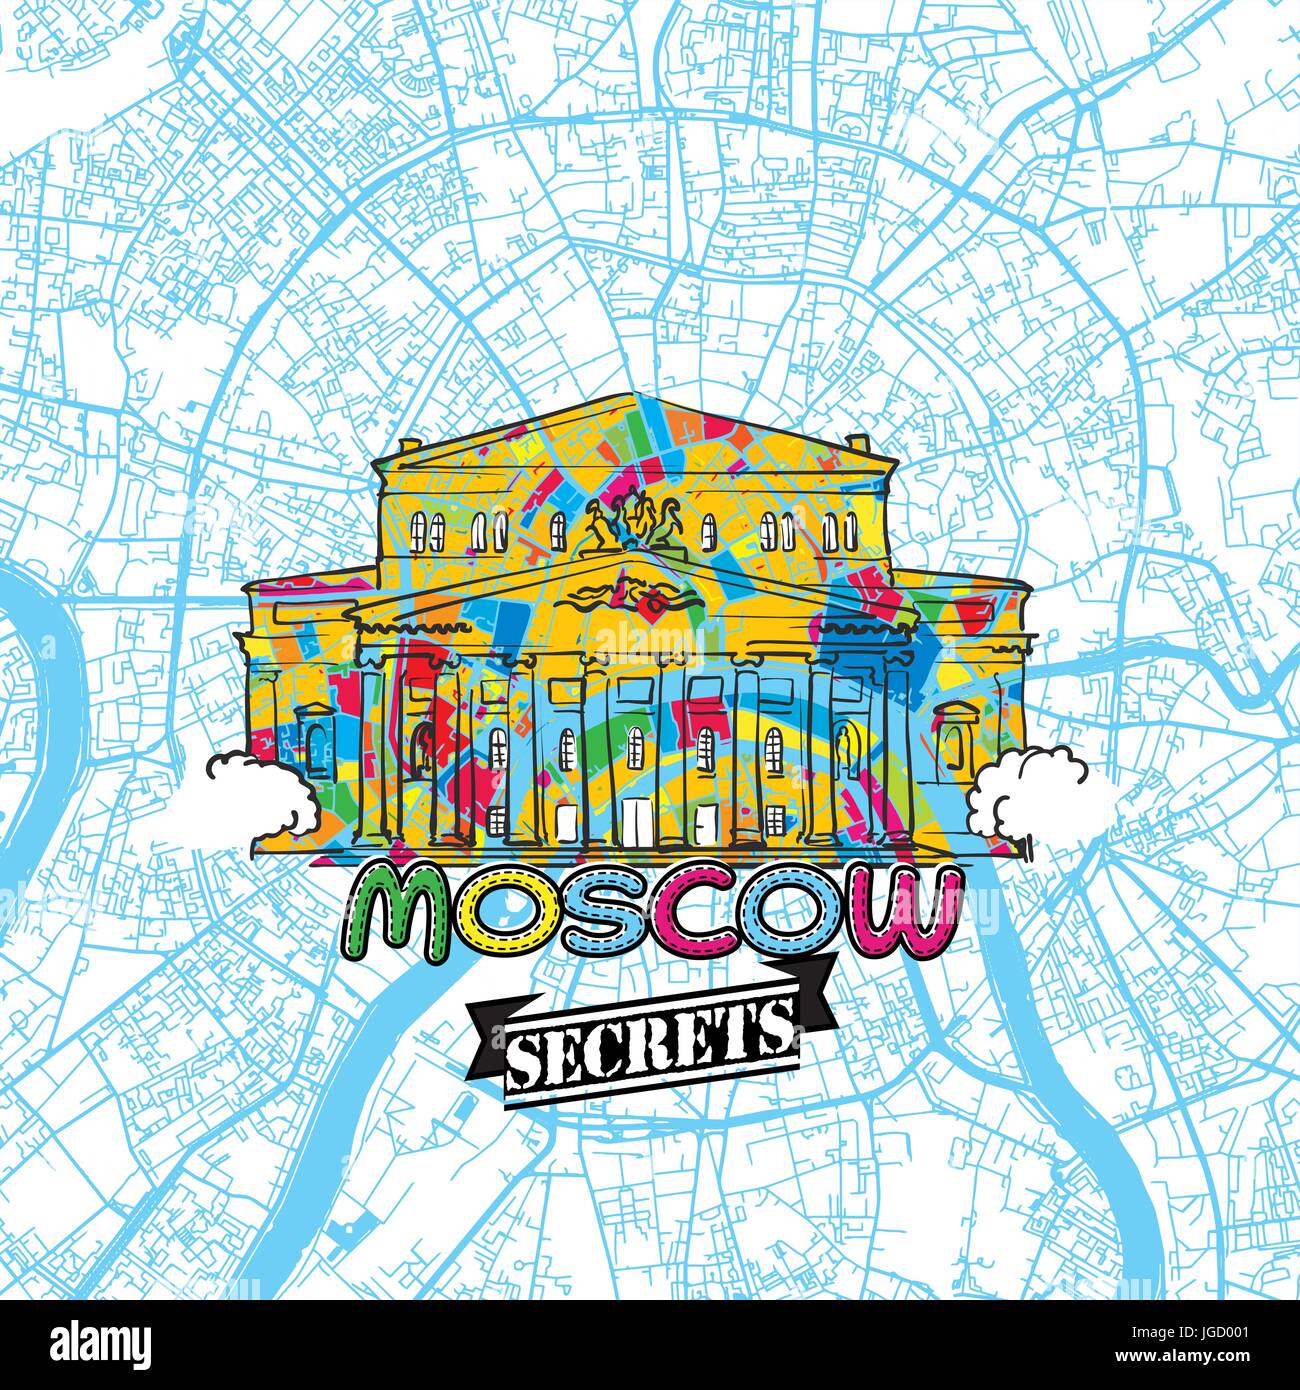 Moskau reisen Geheimnisse Art Map für die Zuordnung von Experten und Reiseführer. Handgemachte Stadt Logo, Typo-Abzeichen und Hand gezeichnete Vektor-Bild an der Spitze sind gruppiert und Stock Vektor